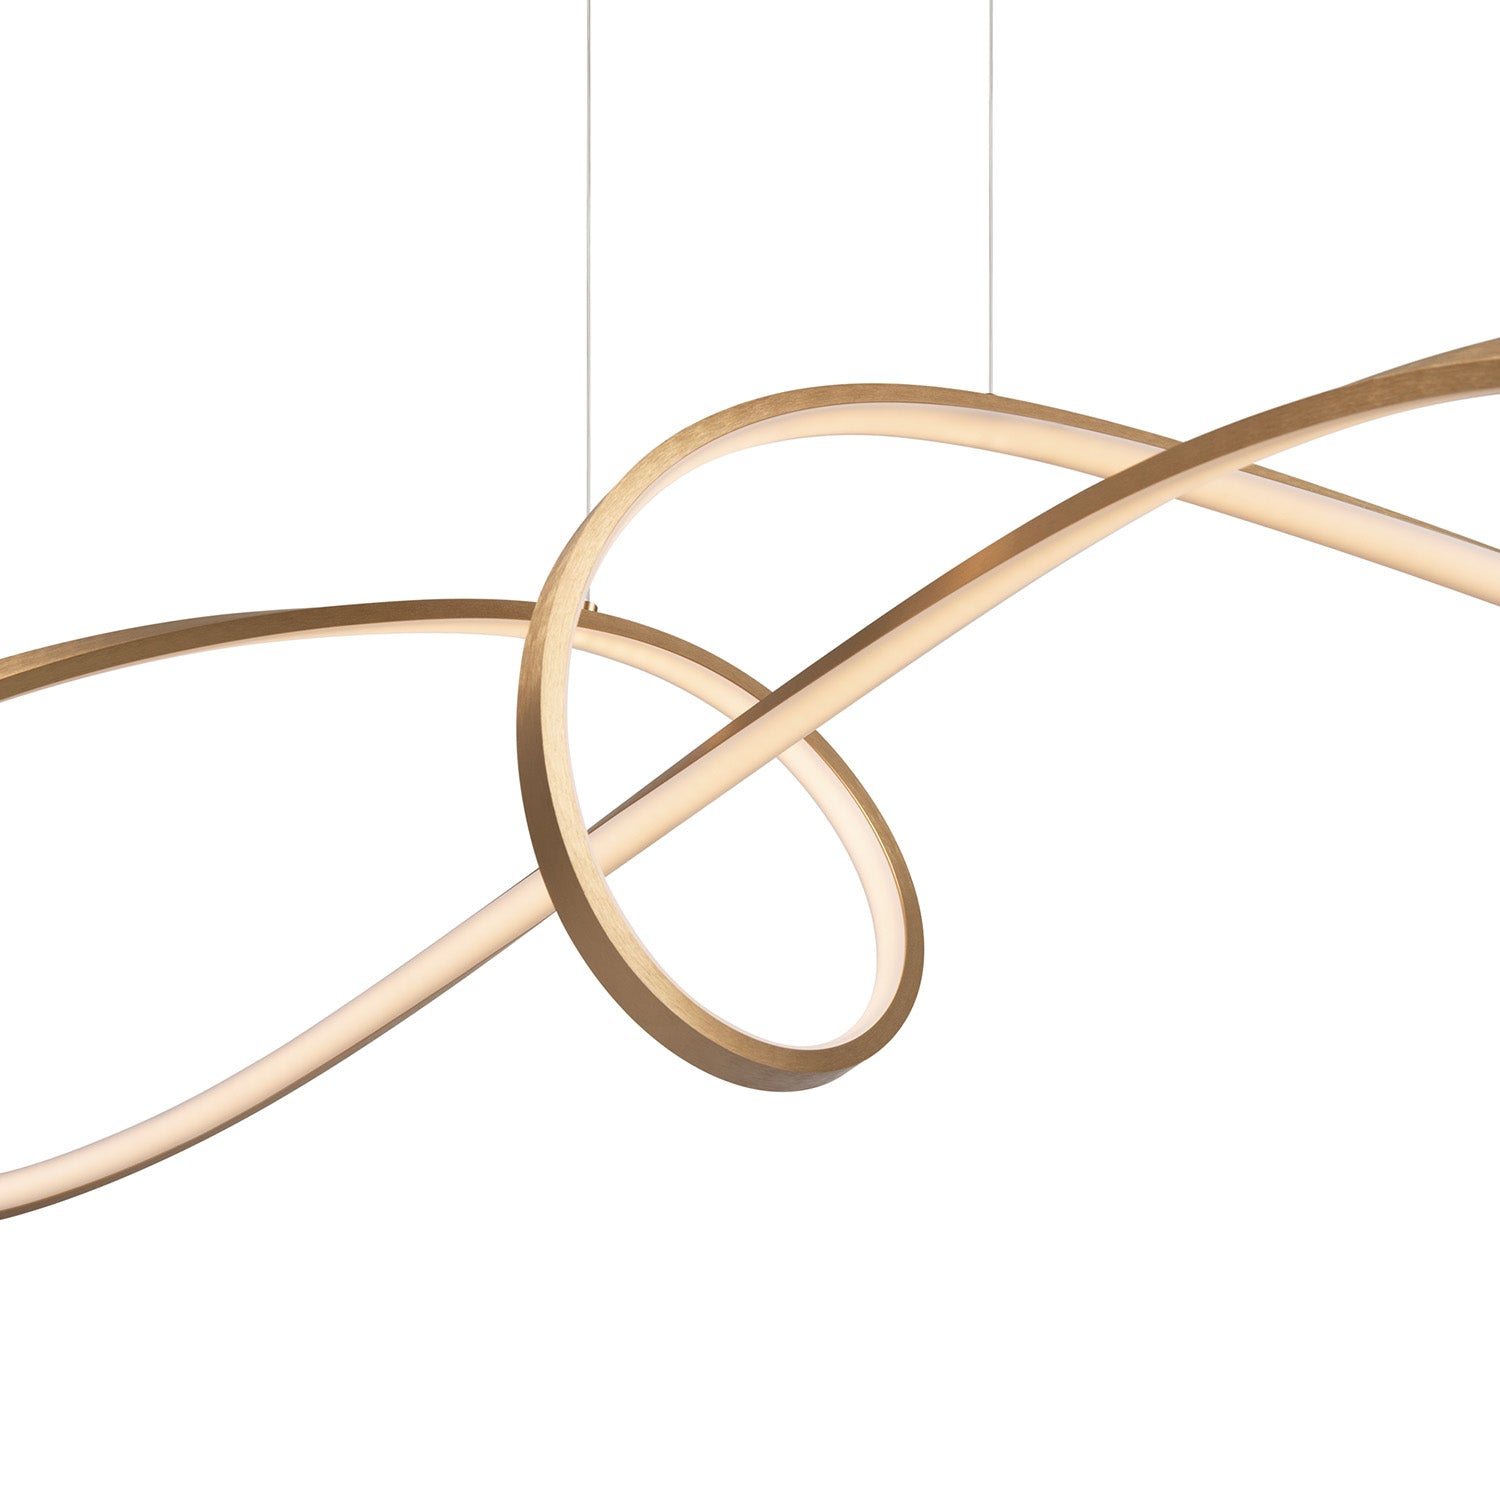 CURVE – Integrierte LED-Knotenaufhängung, goldenes oder schwarzes Design